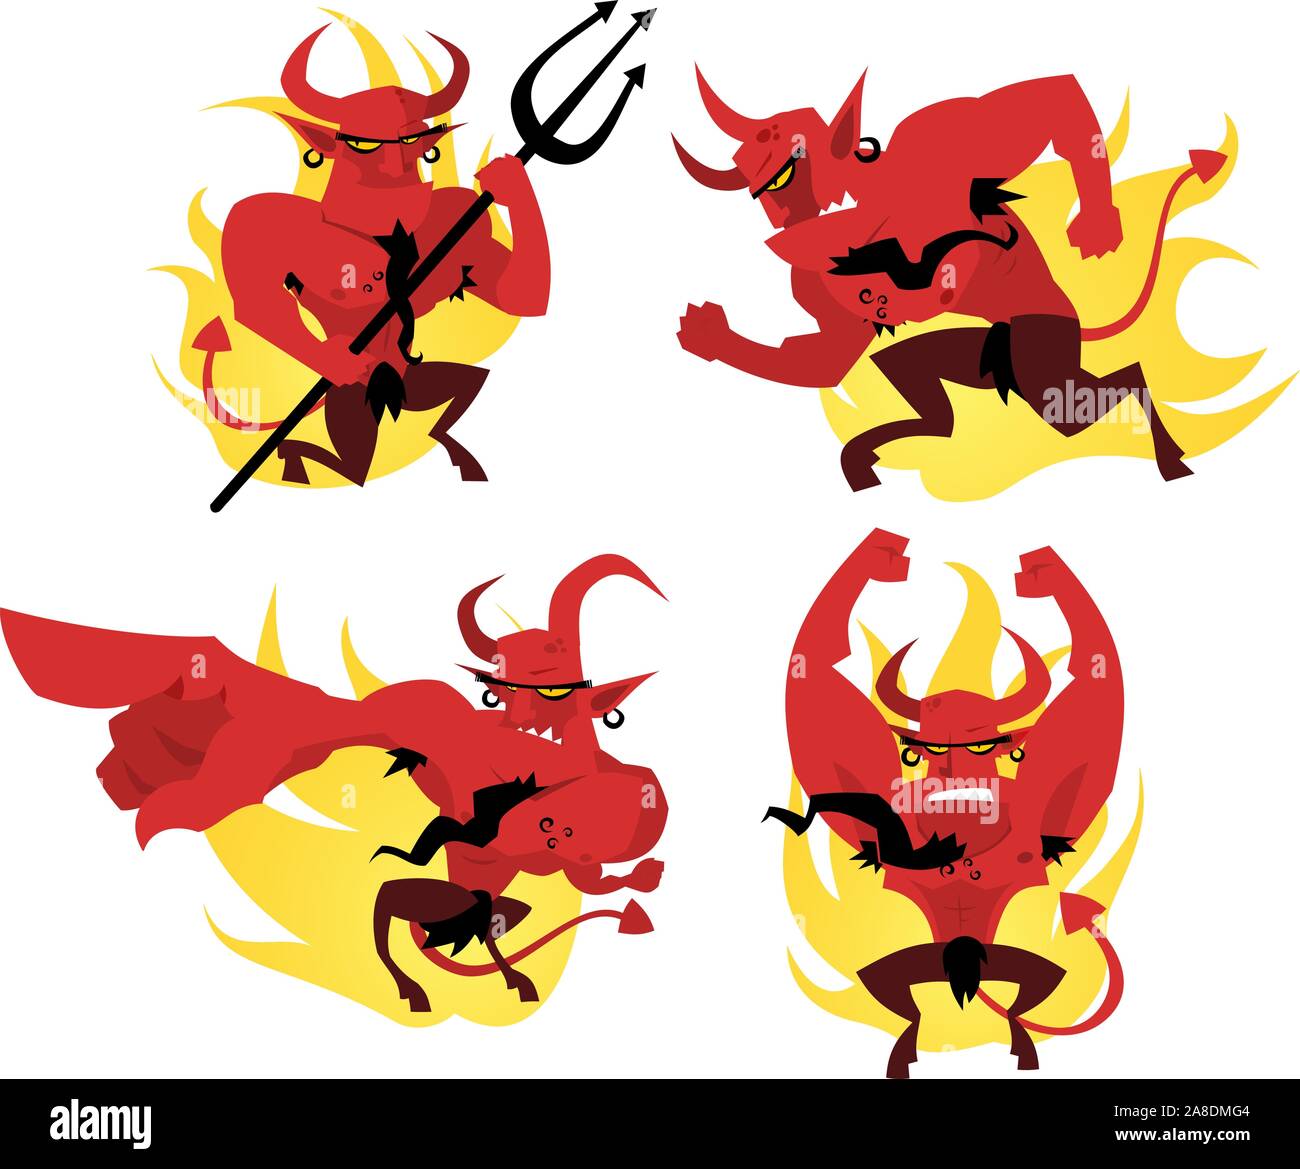 Jeu d'action Cartoon devil Illustration de Vecteur